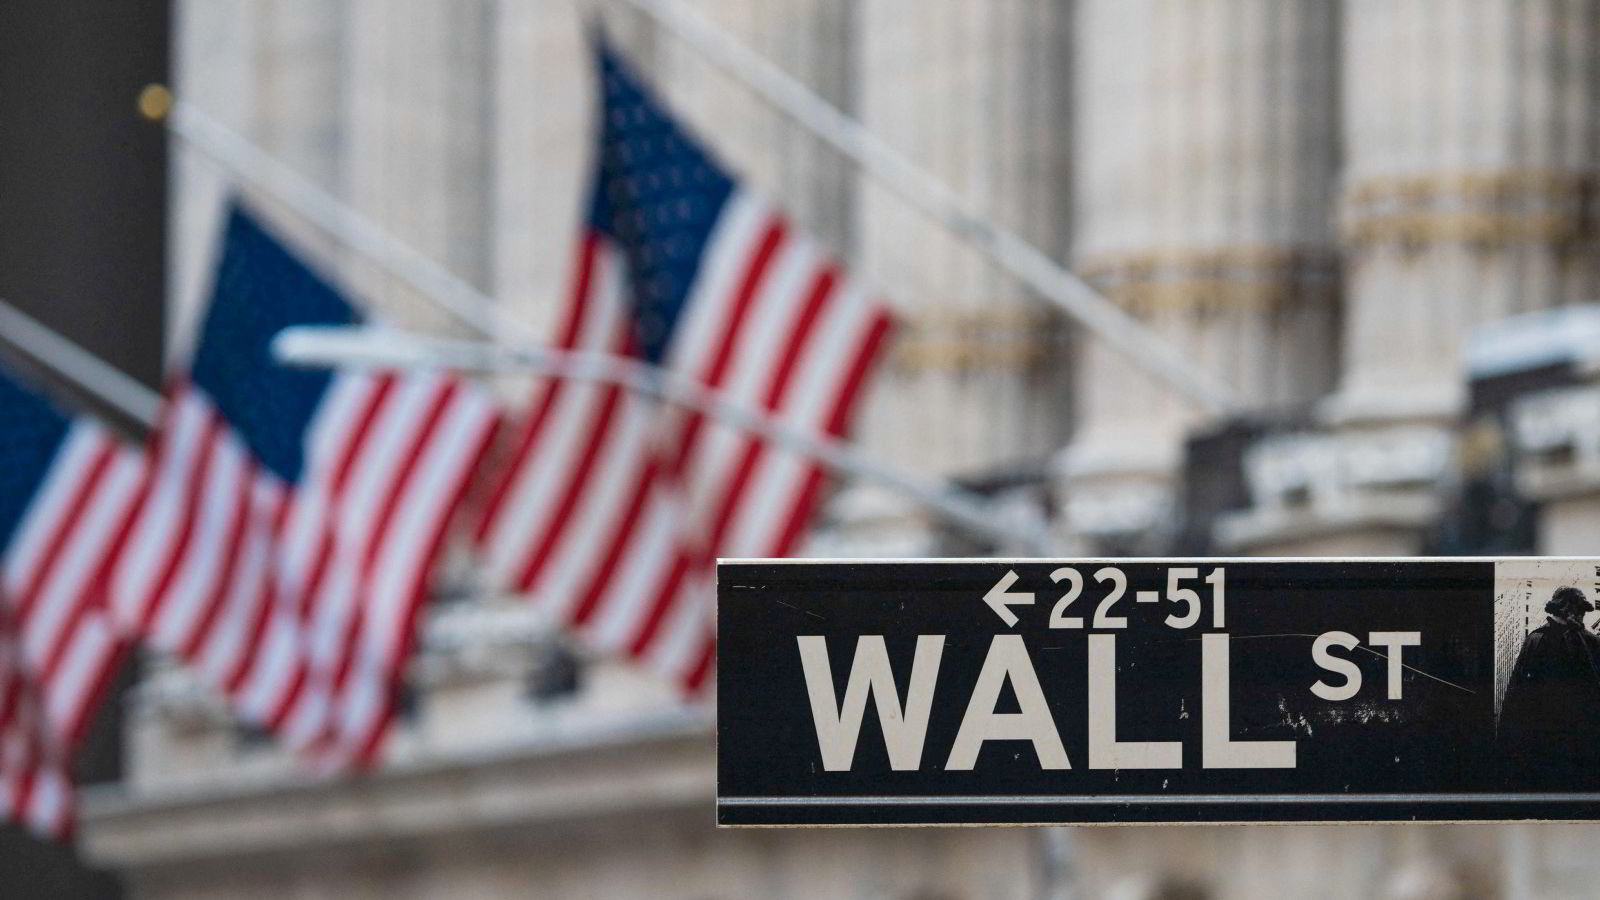 Lavere prisstigning enn ventet sendte Wall Street kraftig opp - Nasdaq steg 2,89 prosent